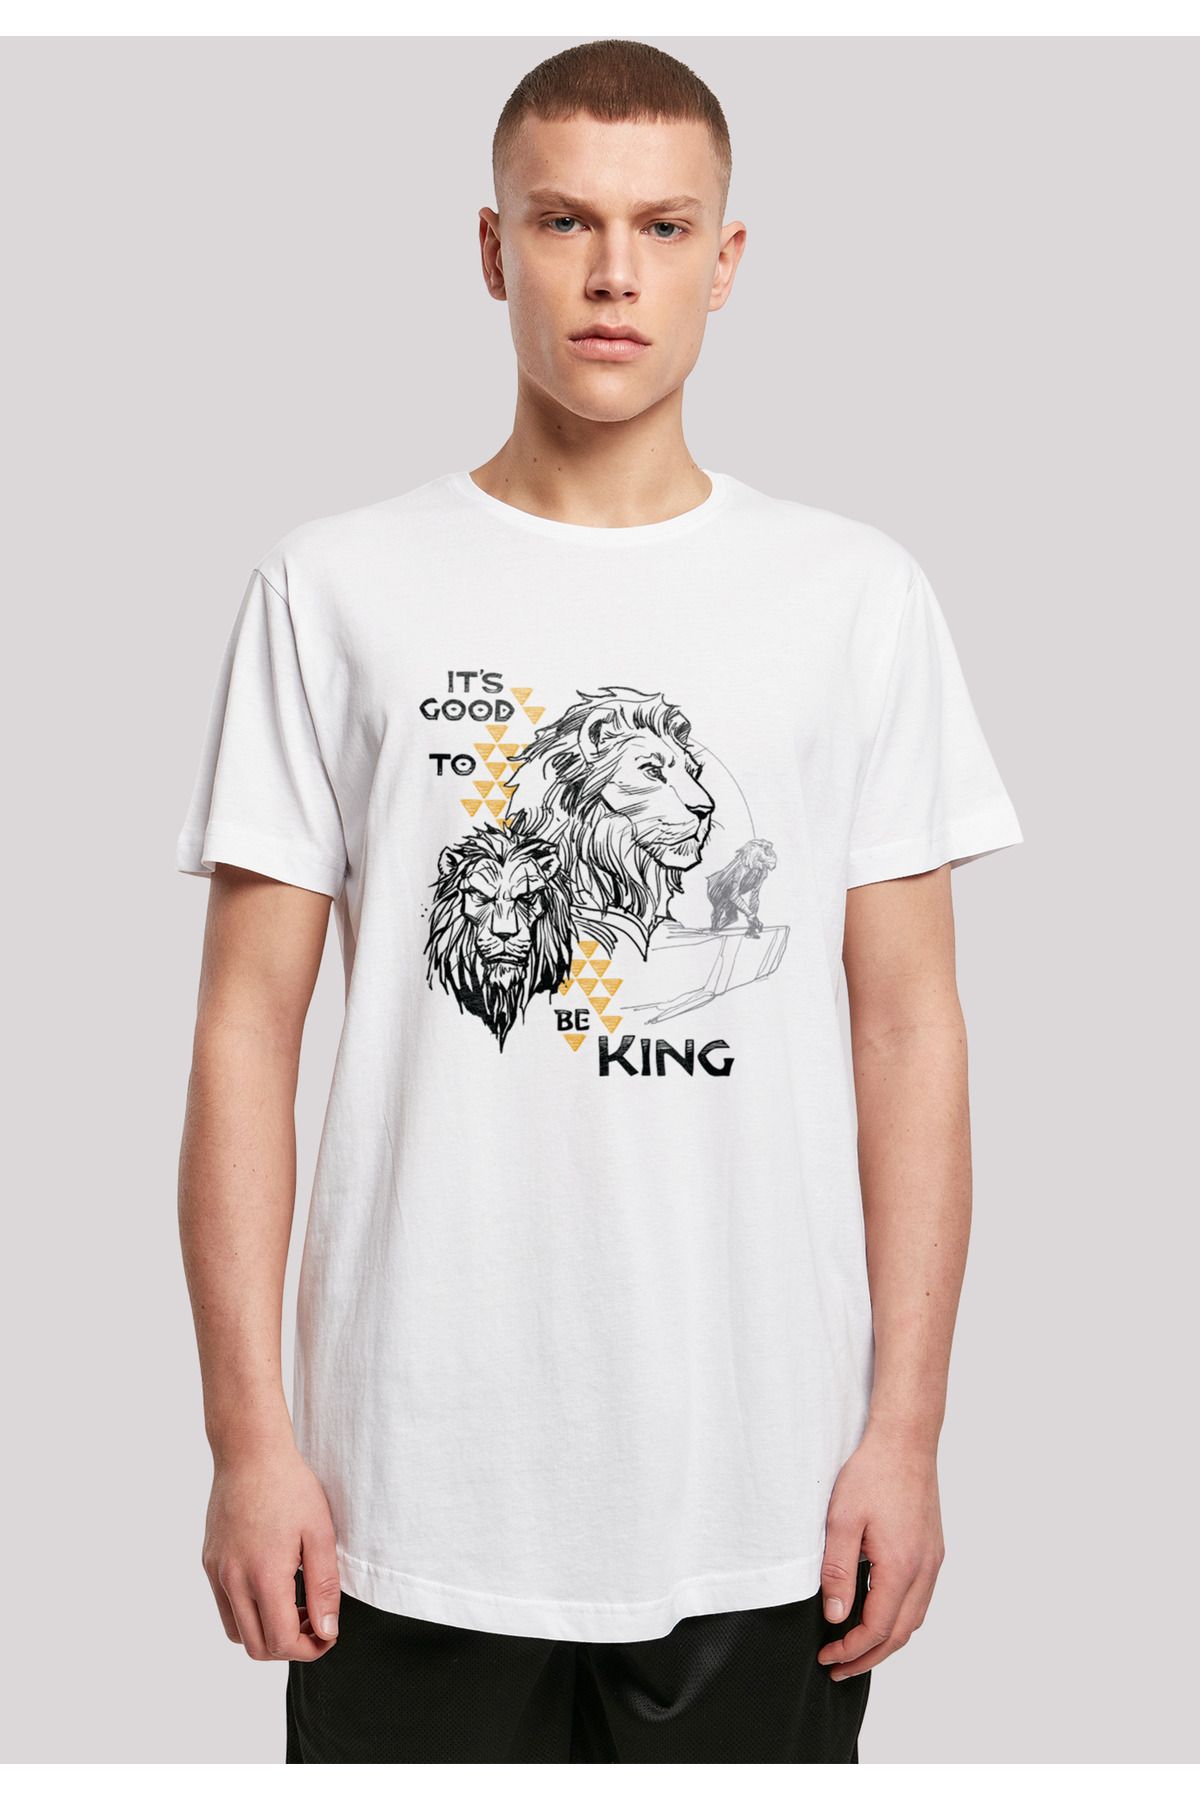 King König der langen - Good Disney F4NT4STIC mit Trendyol Der Be Herren To It\'s geformtem Film Löwen T-Shirt